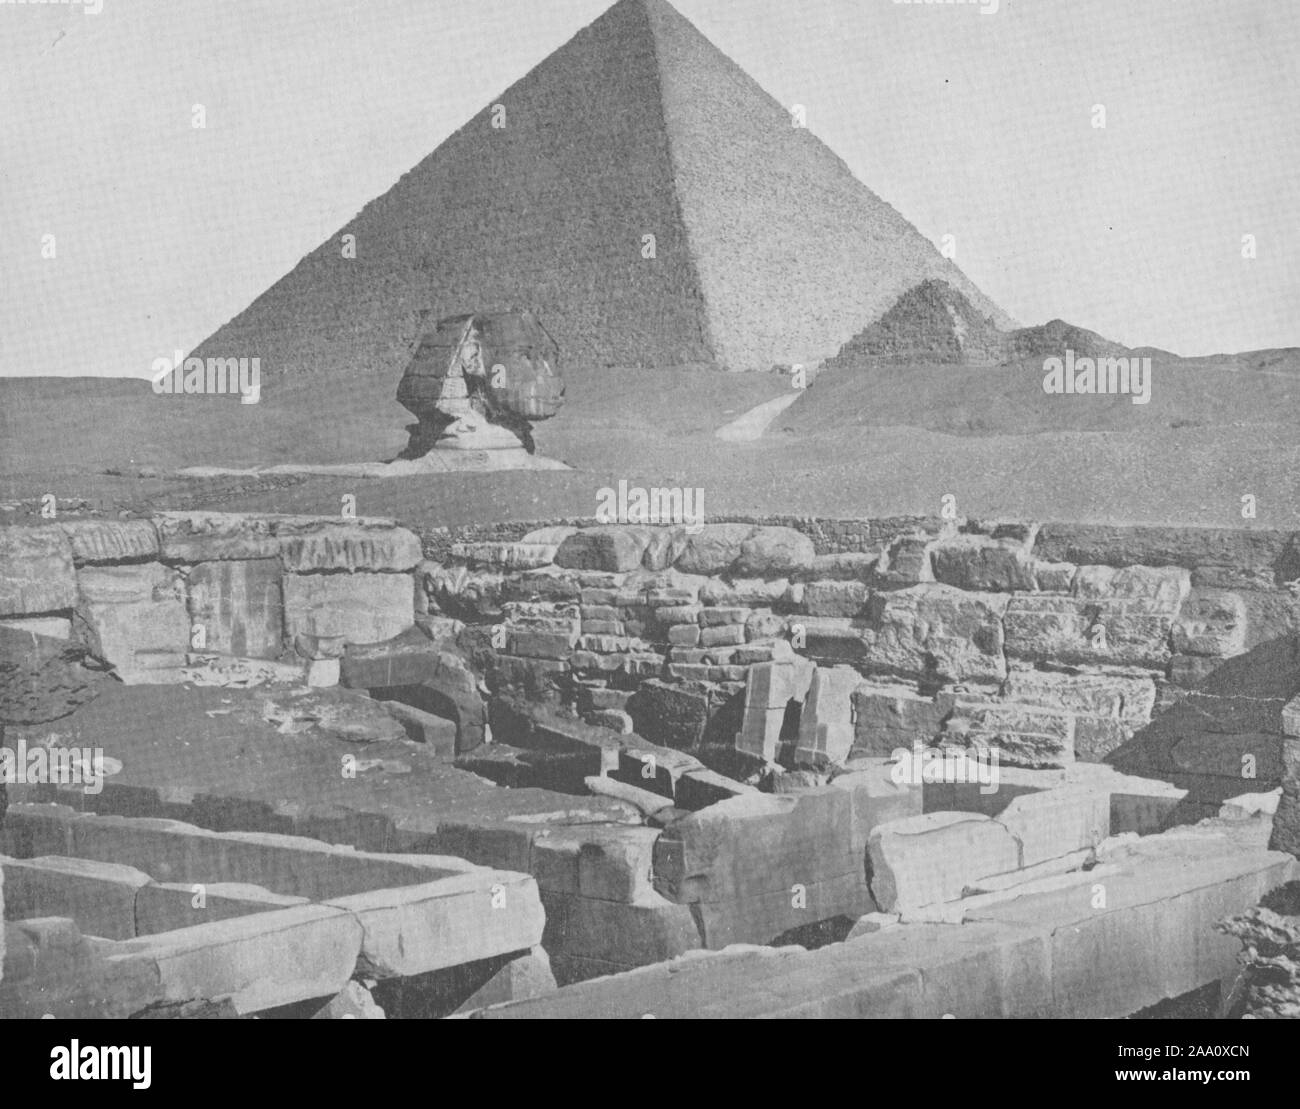 Schwarz-weiß Foto von archäologischen Ruinen in der Nähe der Großen Pyramide und die Große Sphinx von Gizeh in der heutigen El Giza, Ägypten, von John Lawson Stoddard, von Richard Reynolds und Co., 1892 veröffentlicht. Von der New York Public Library. () Stockfoto